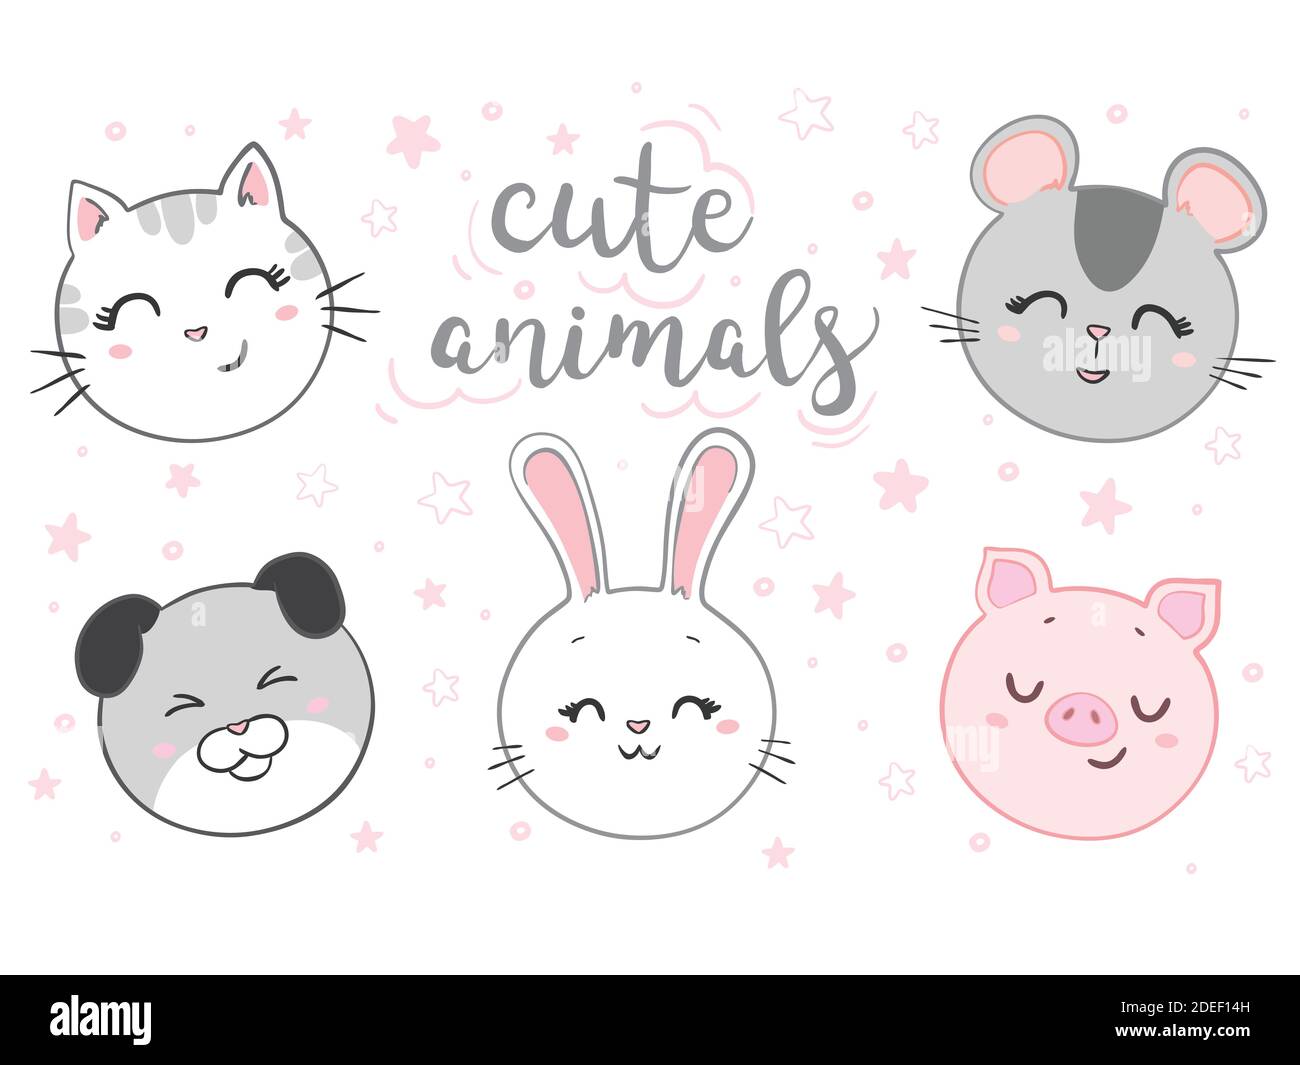 Katze, Maus, Hund, Kaninchen, Schwein Gesicht gesetzt. Kawaii-Tier. Niedliche Zeichentrickfigur. Liebe die Karte. Flaches Design. Weißer Hintergrund. Stock Vektor